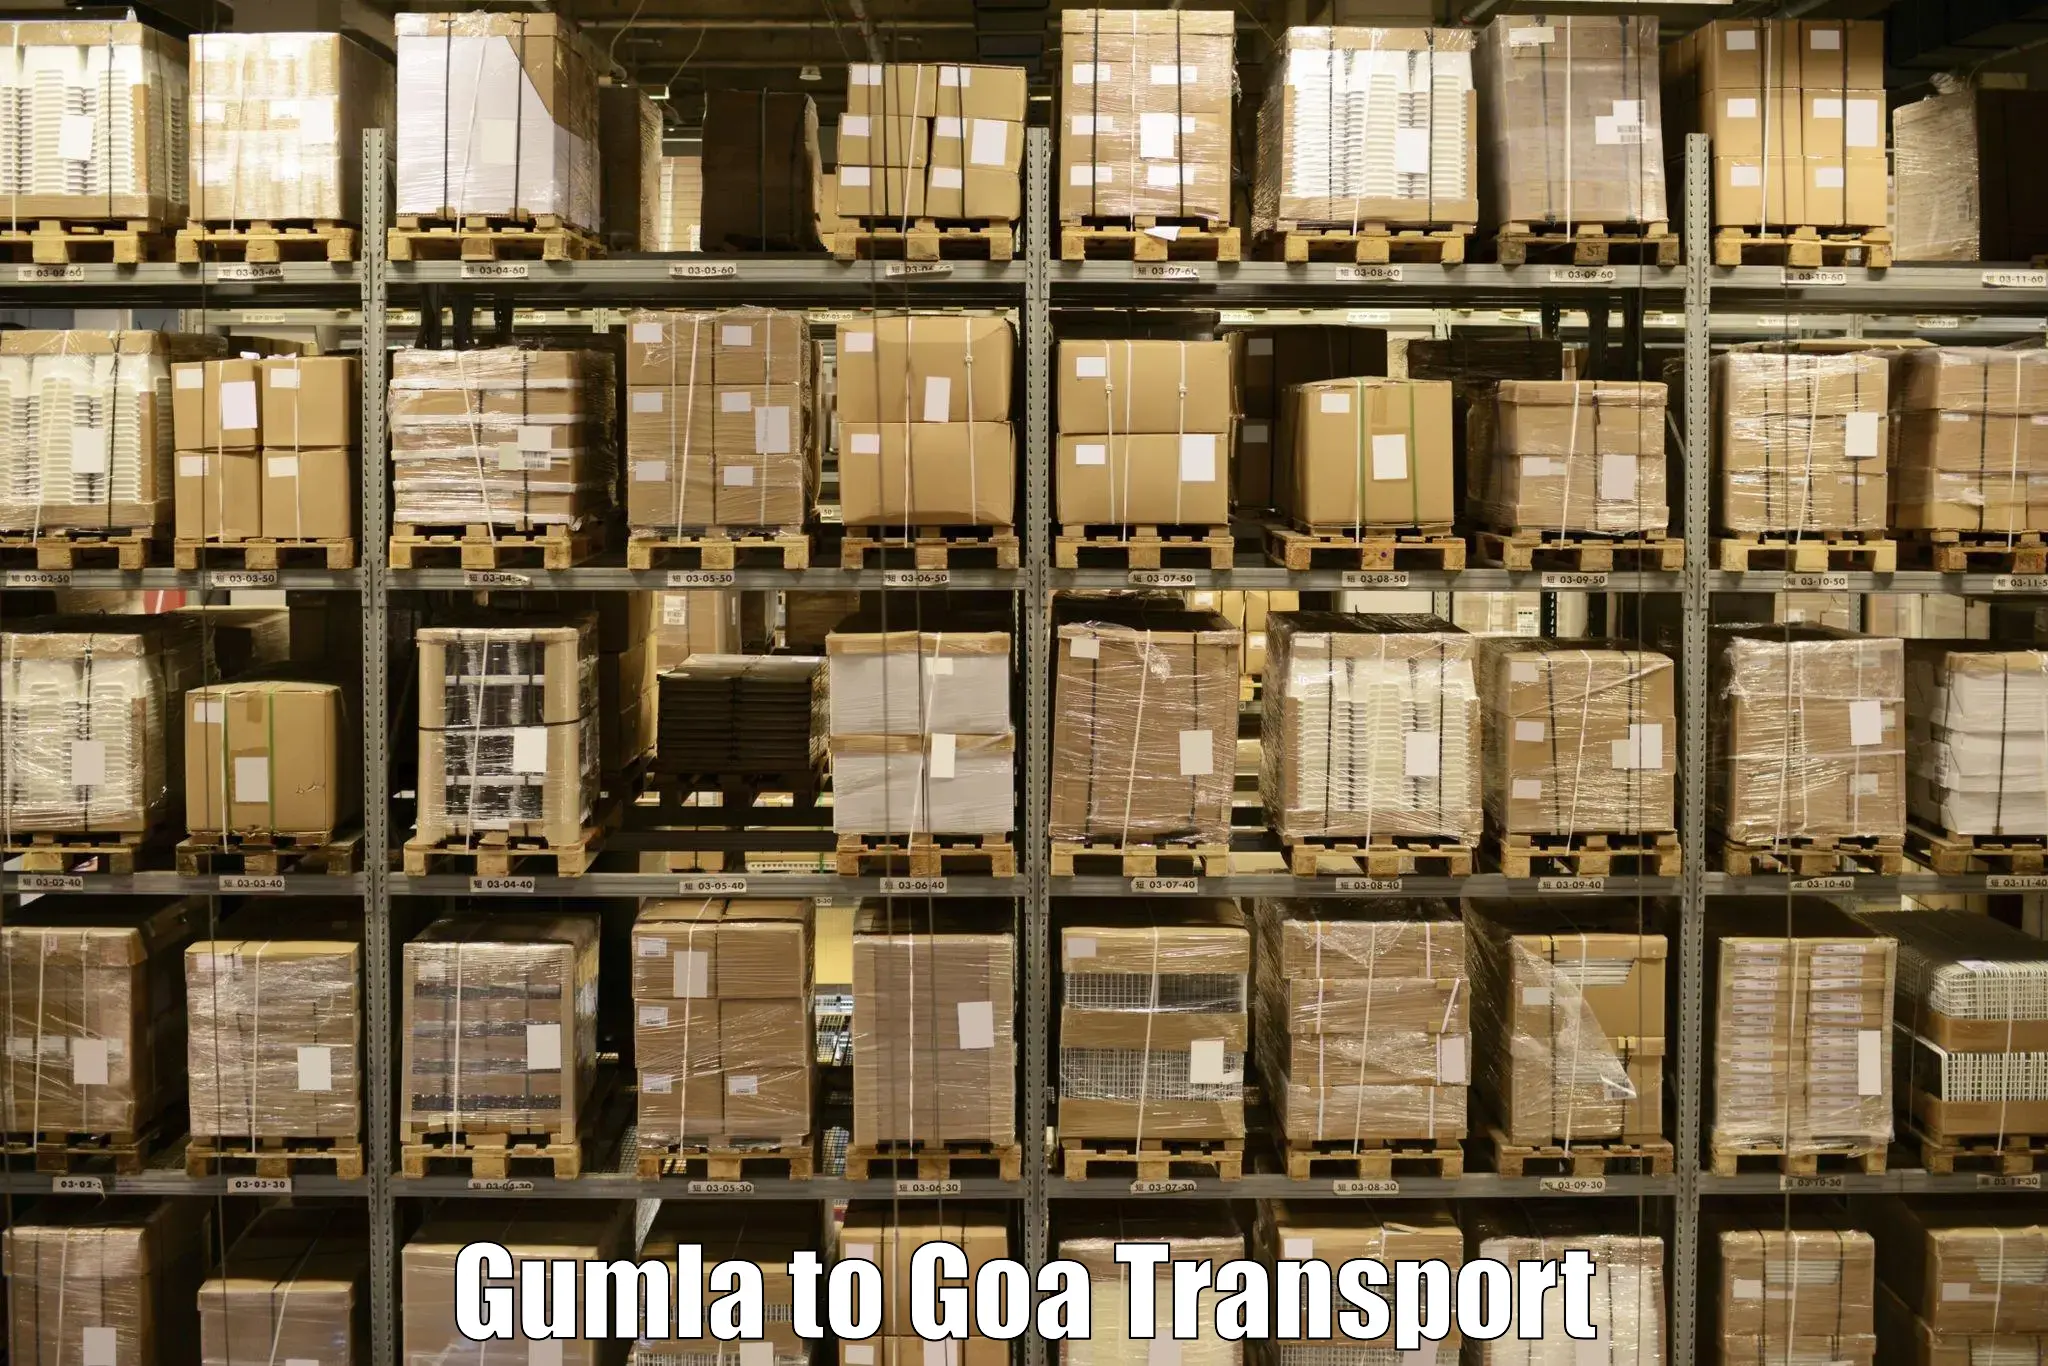 Transport shared services Gumla to Bicholim